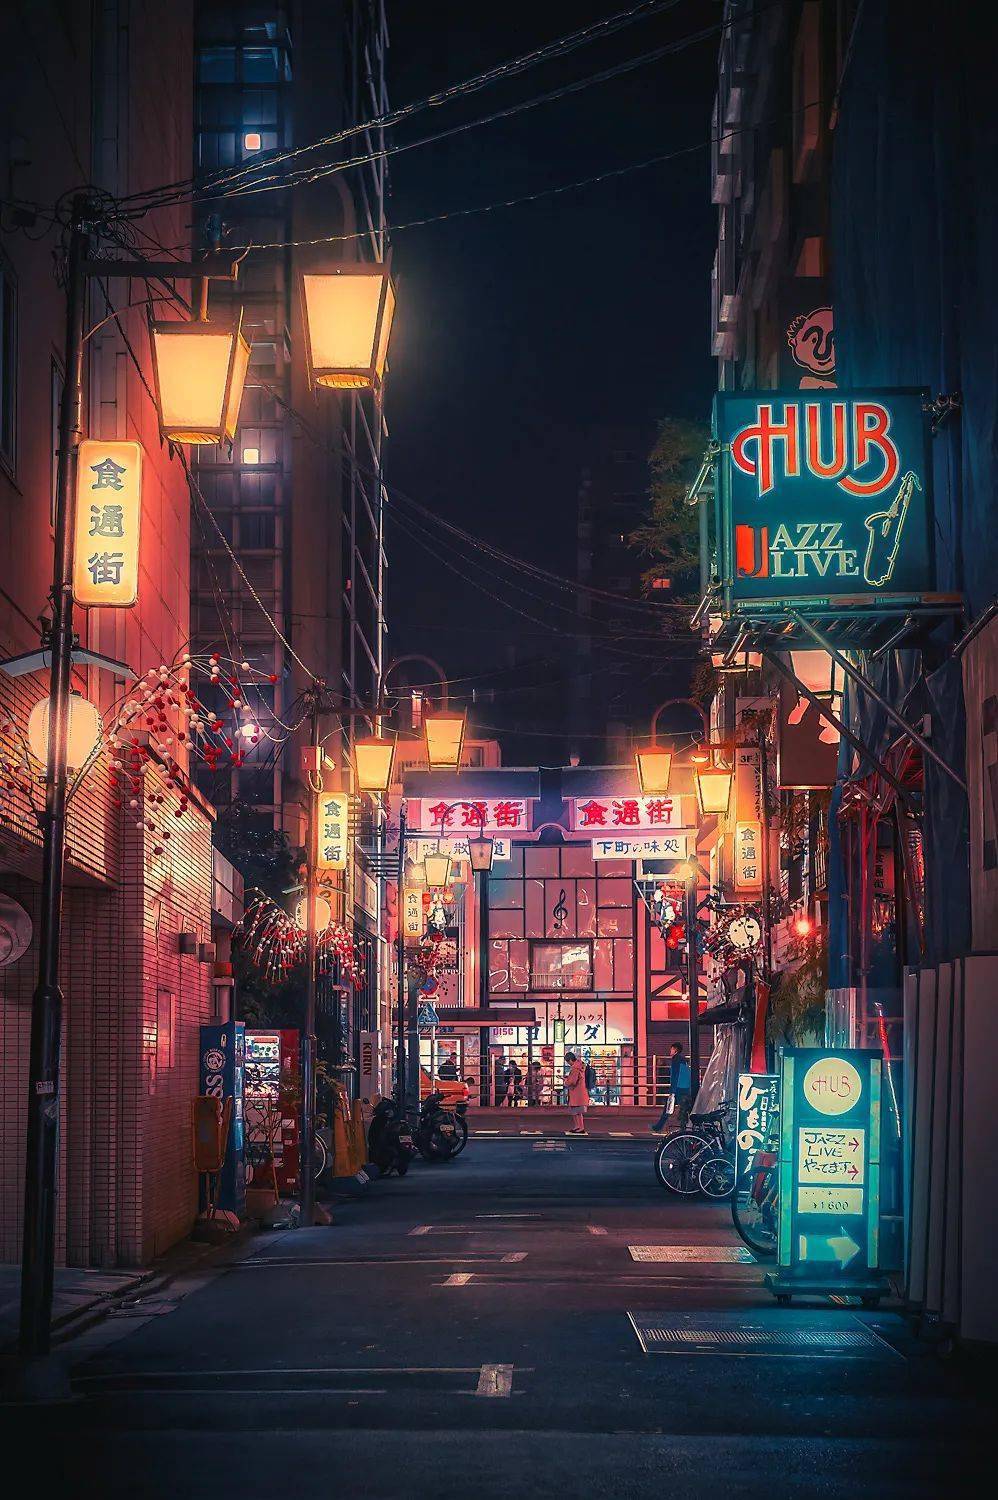 随手一拍,都是风景!镜头下的日本街头招牌文字夜景